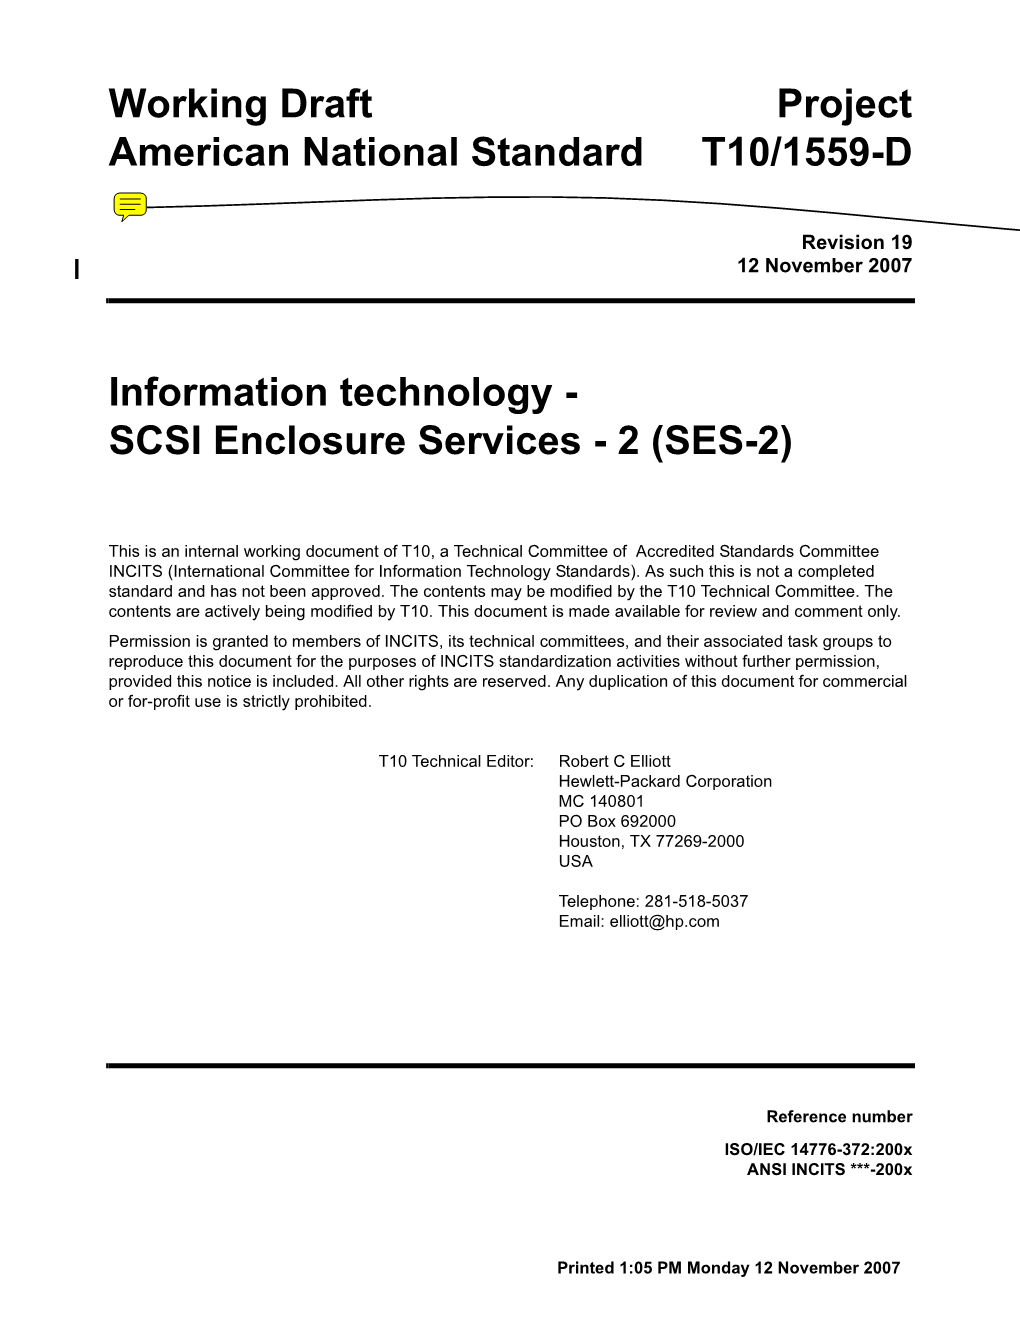 SCSI Enclosure Services - 2 (SES-2)